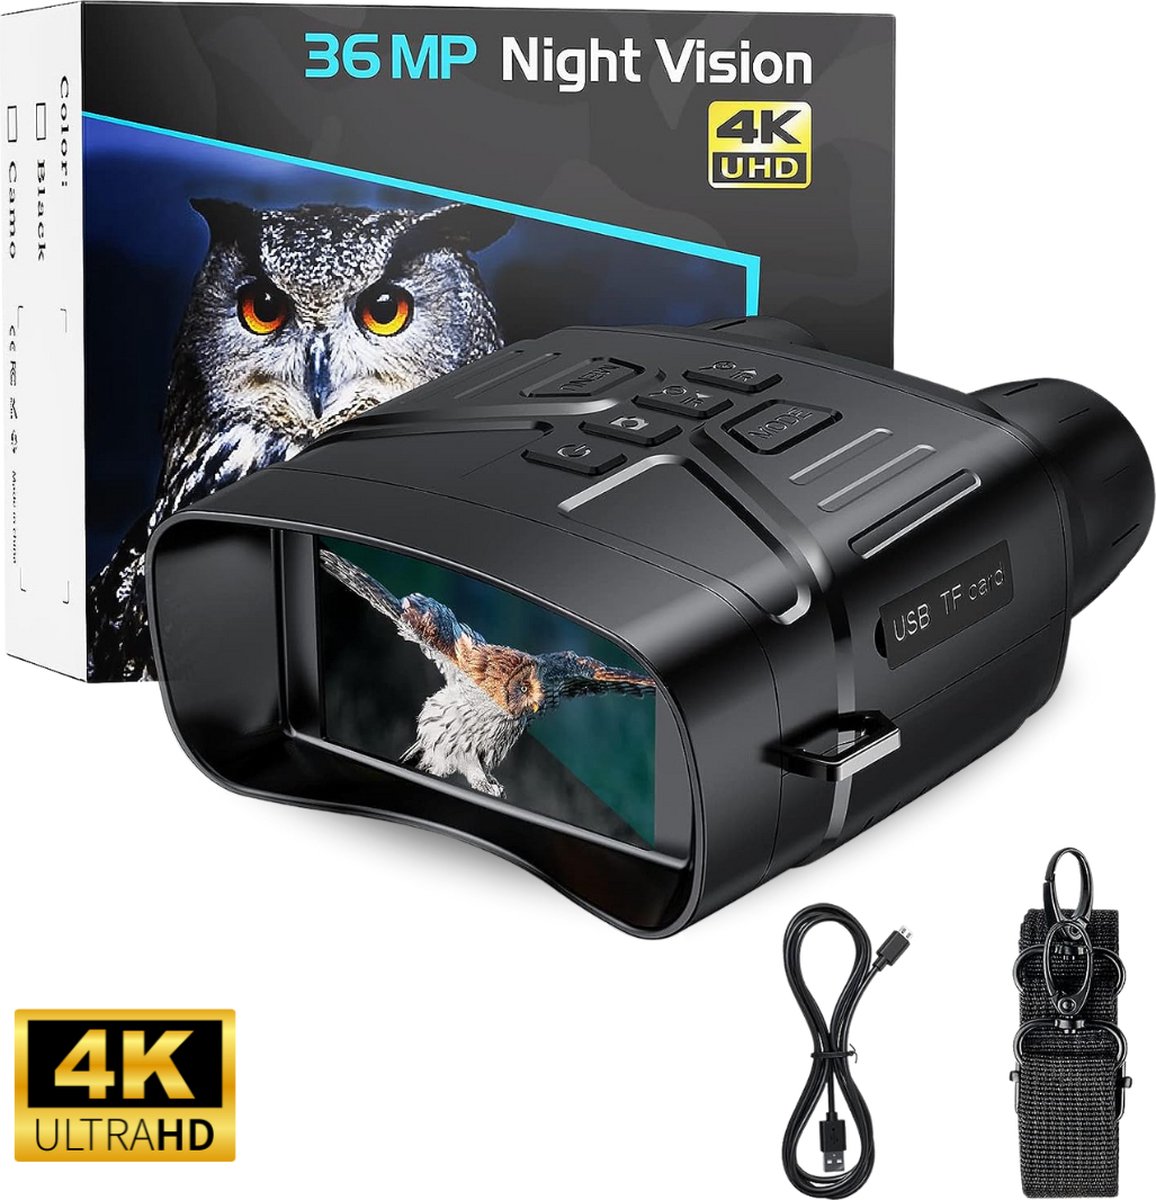 Dirmo 36 mp night vision 4K - nachtkijker – Verrekijker - nachtkijker met infrarood – Warmtebeeld - 300 Meter